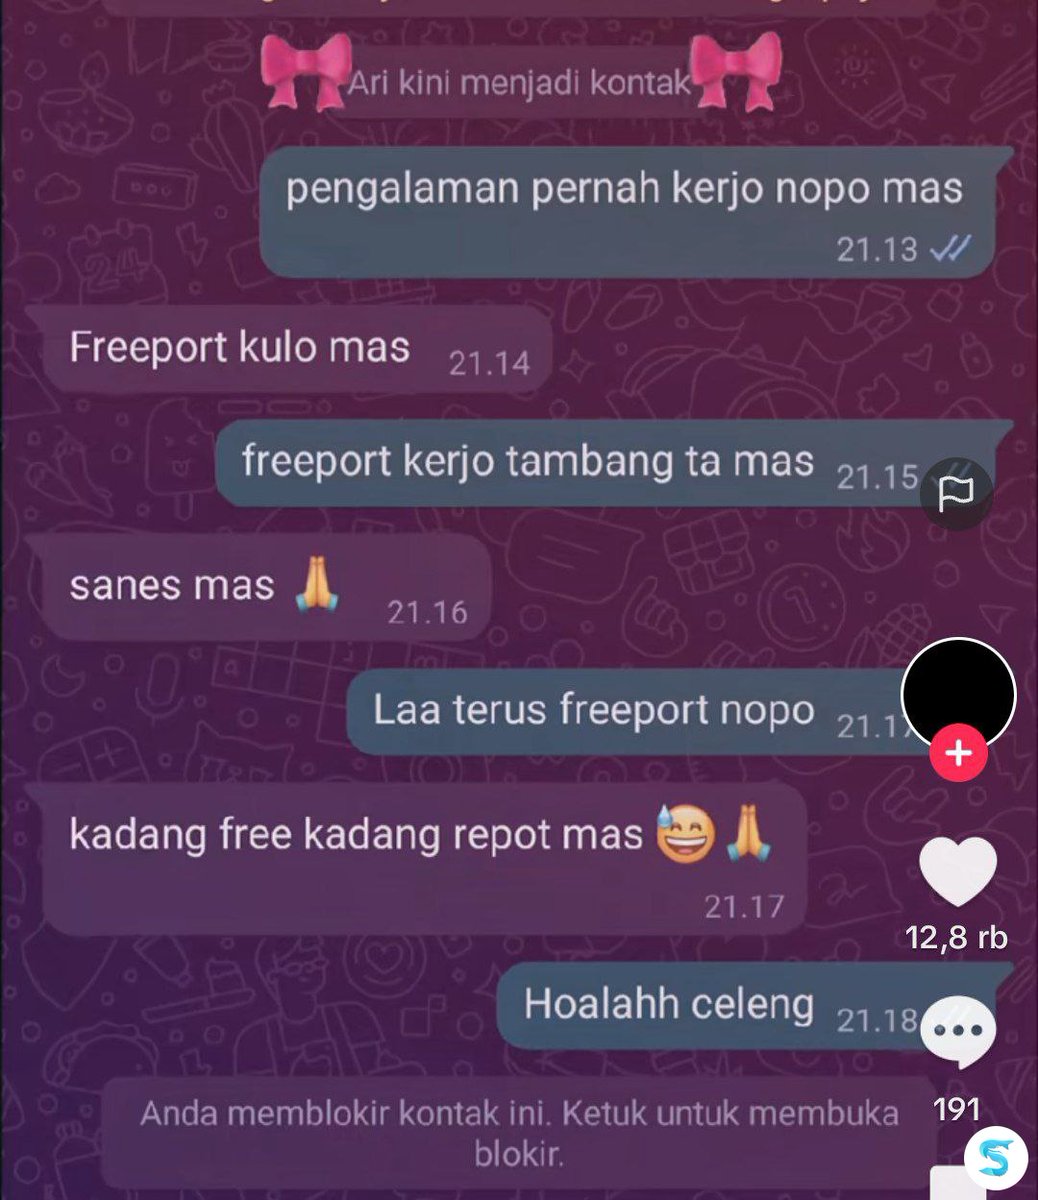 baru ngerti -rek freeport onok kepanjangan e🙏   ib: tiktok